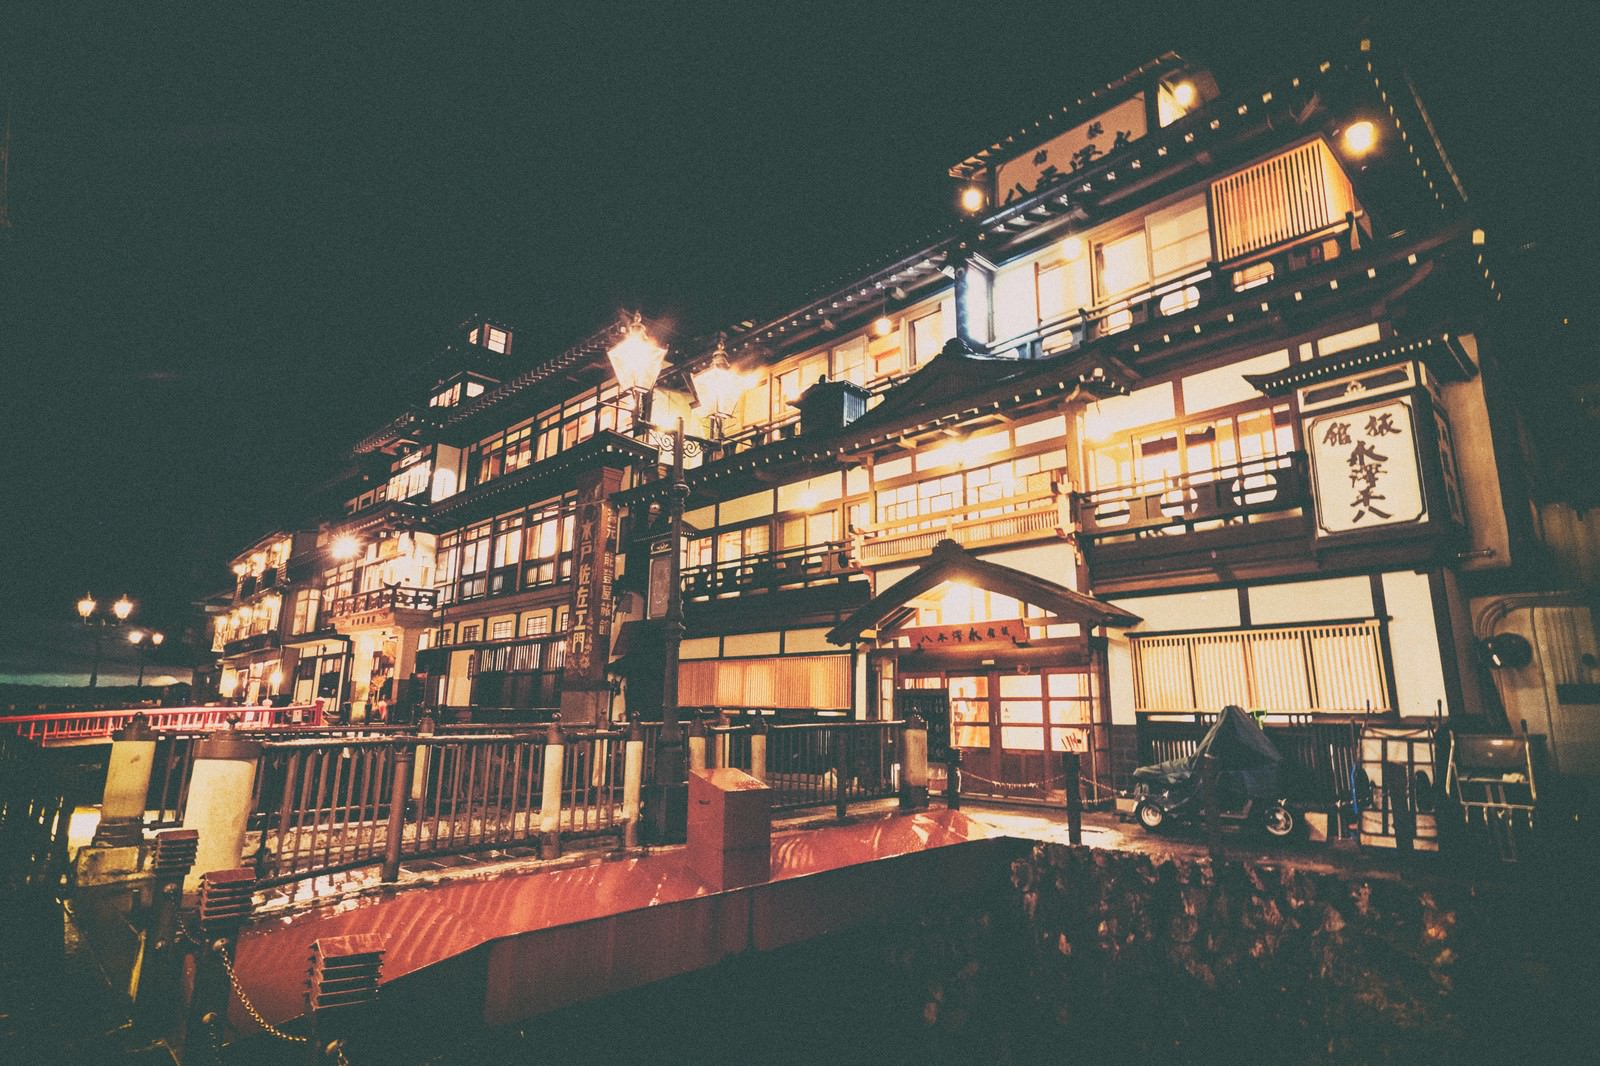 「幻想的なガス灯のともる銀山温泉の旅館」の写真